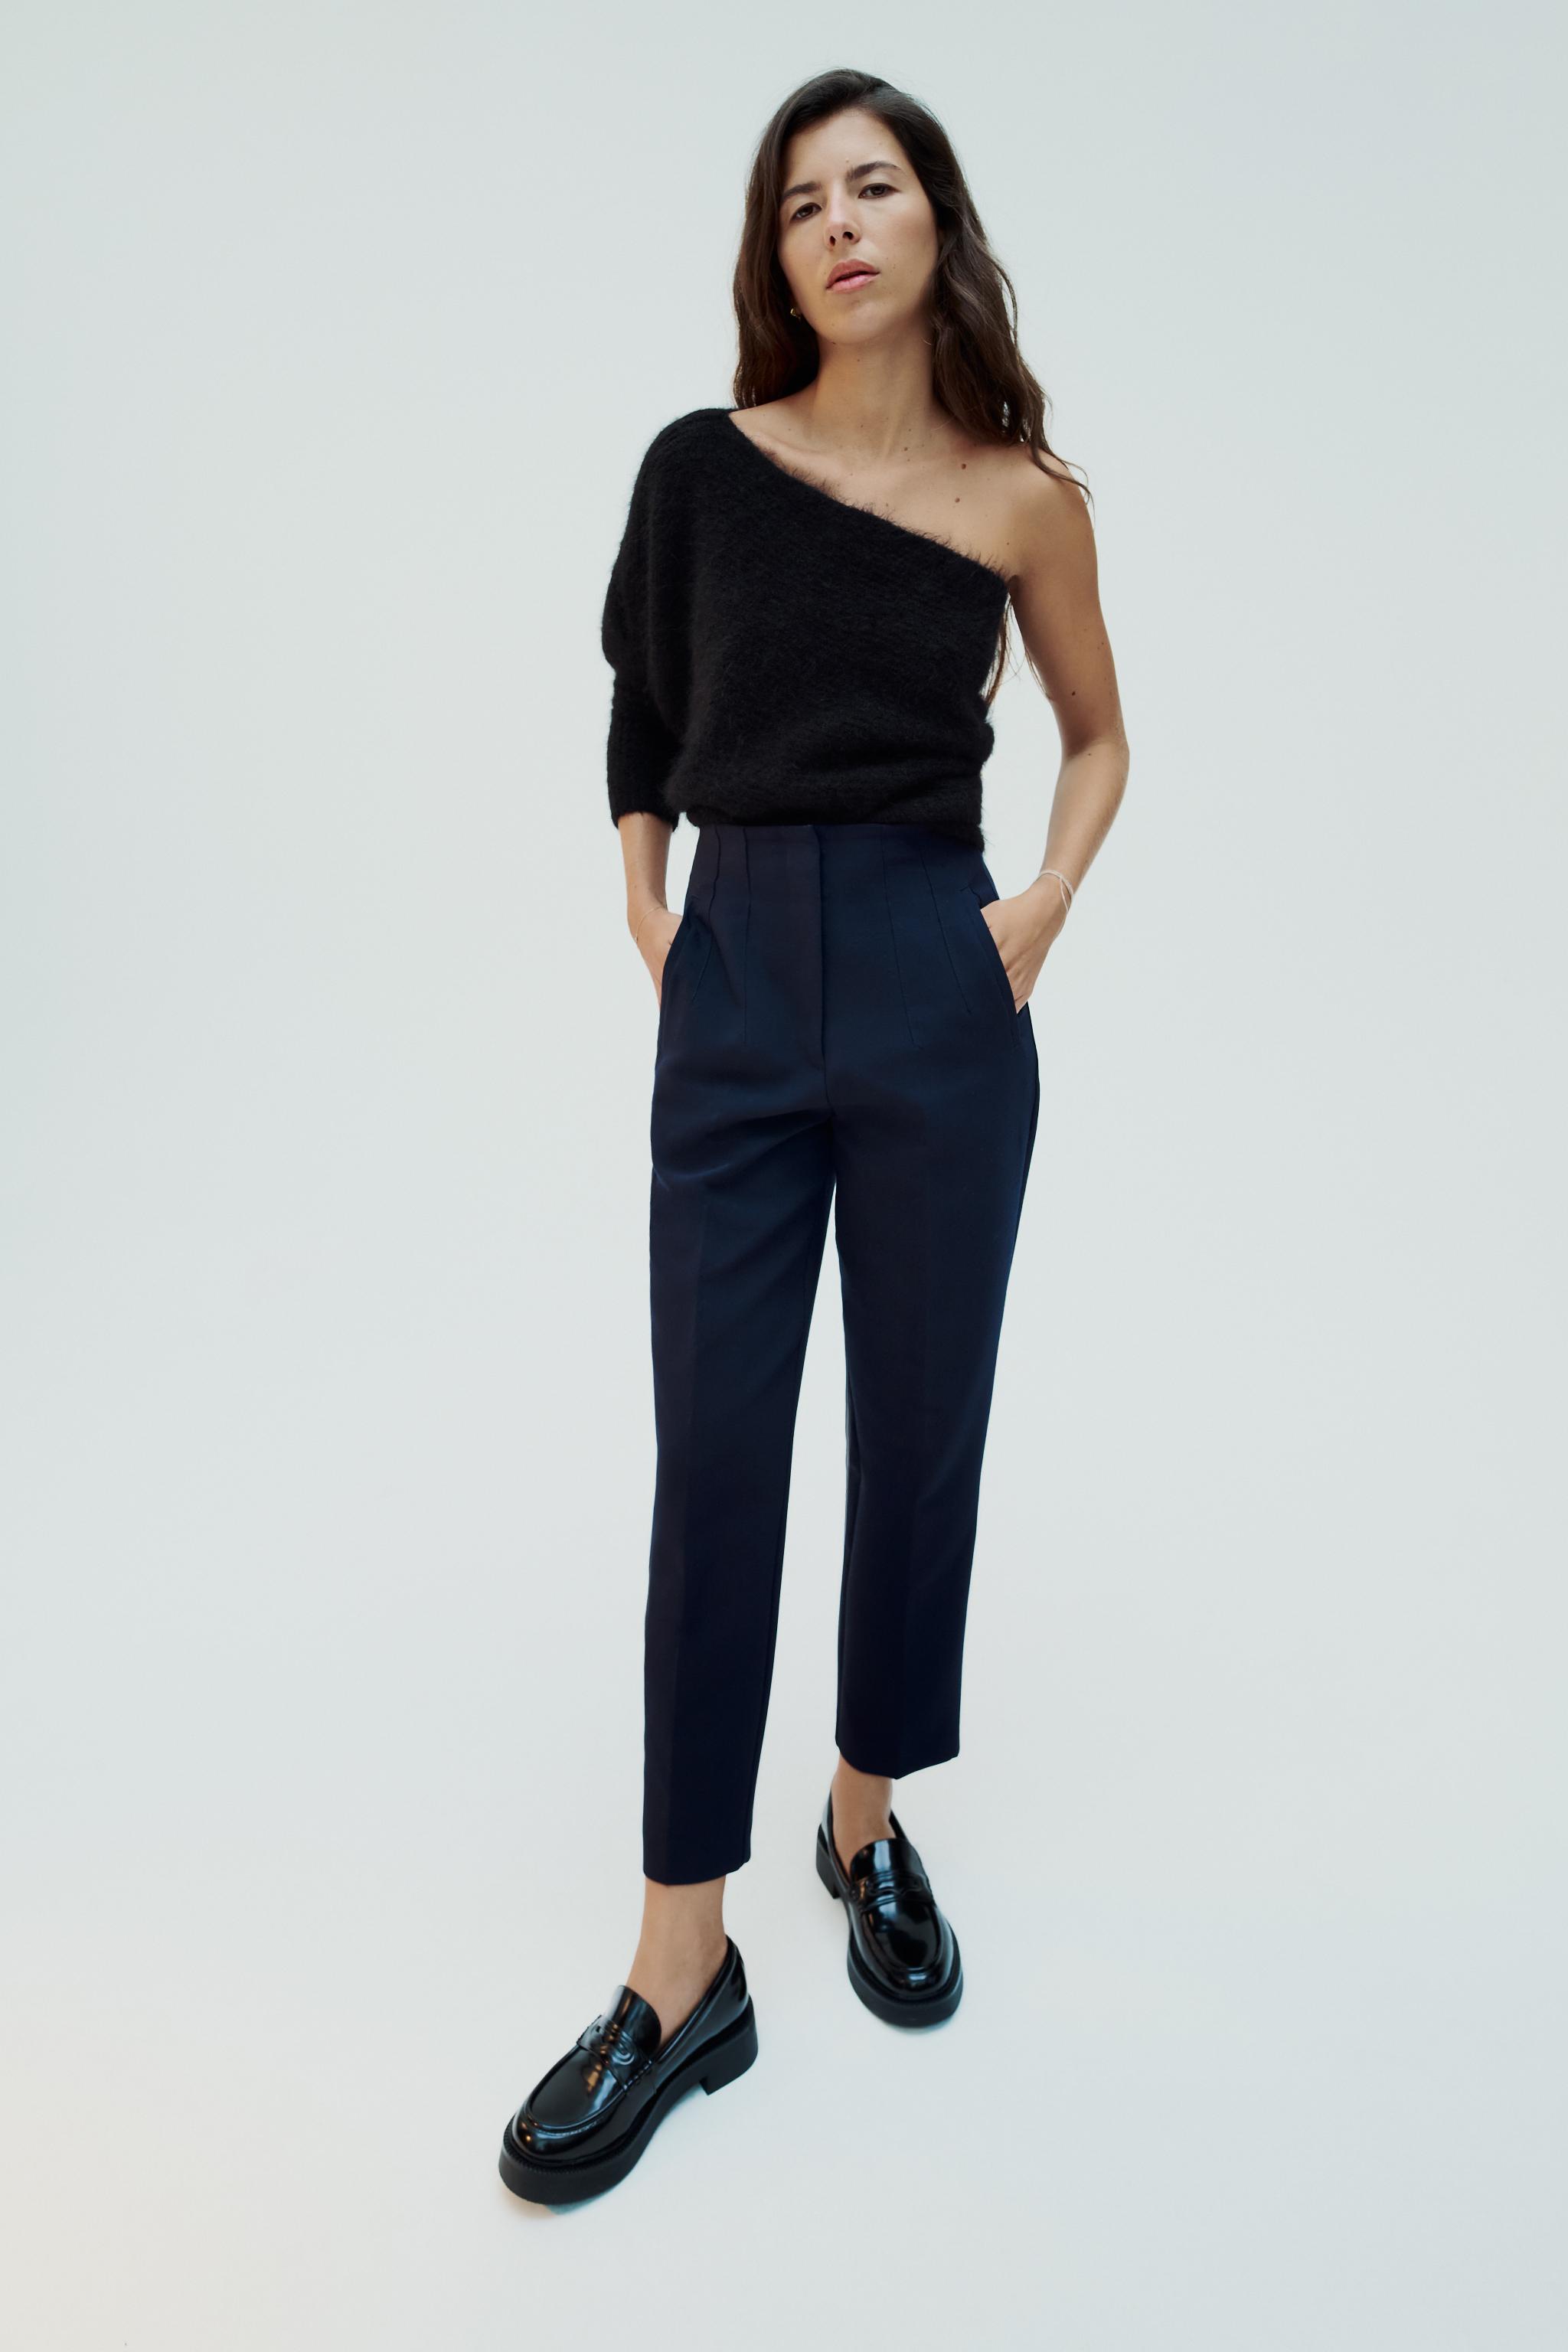 6 pantalones de vestir de la nueva colección de Zara que son los favoritos  de las mujeres 50+ - Belleza estética